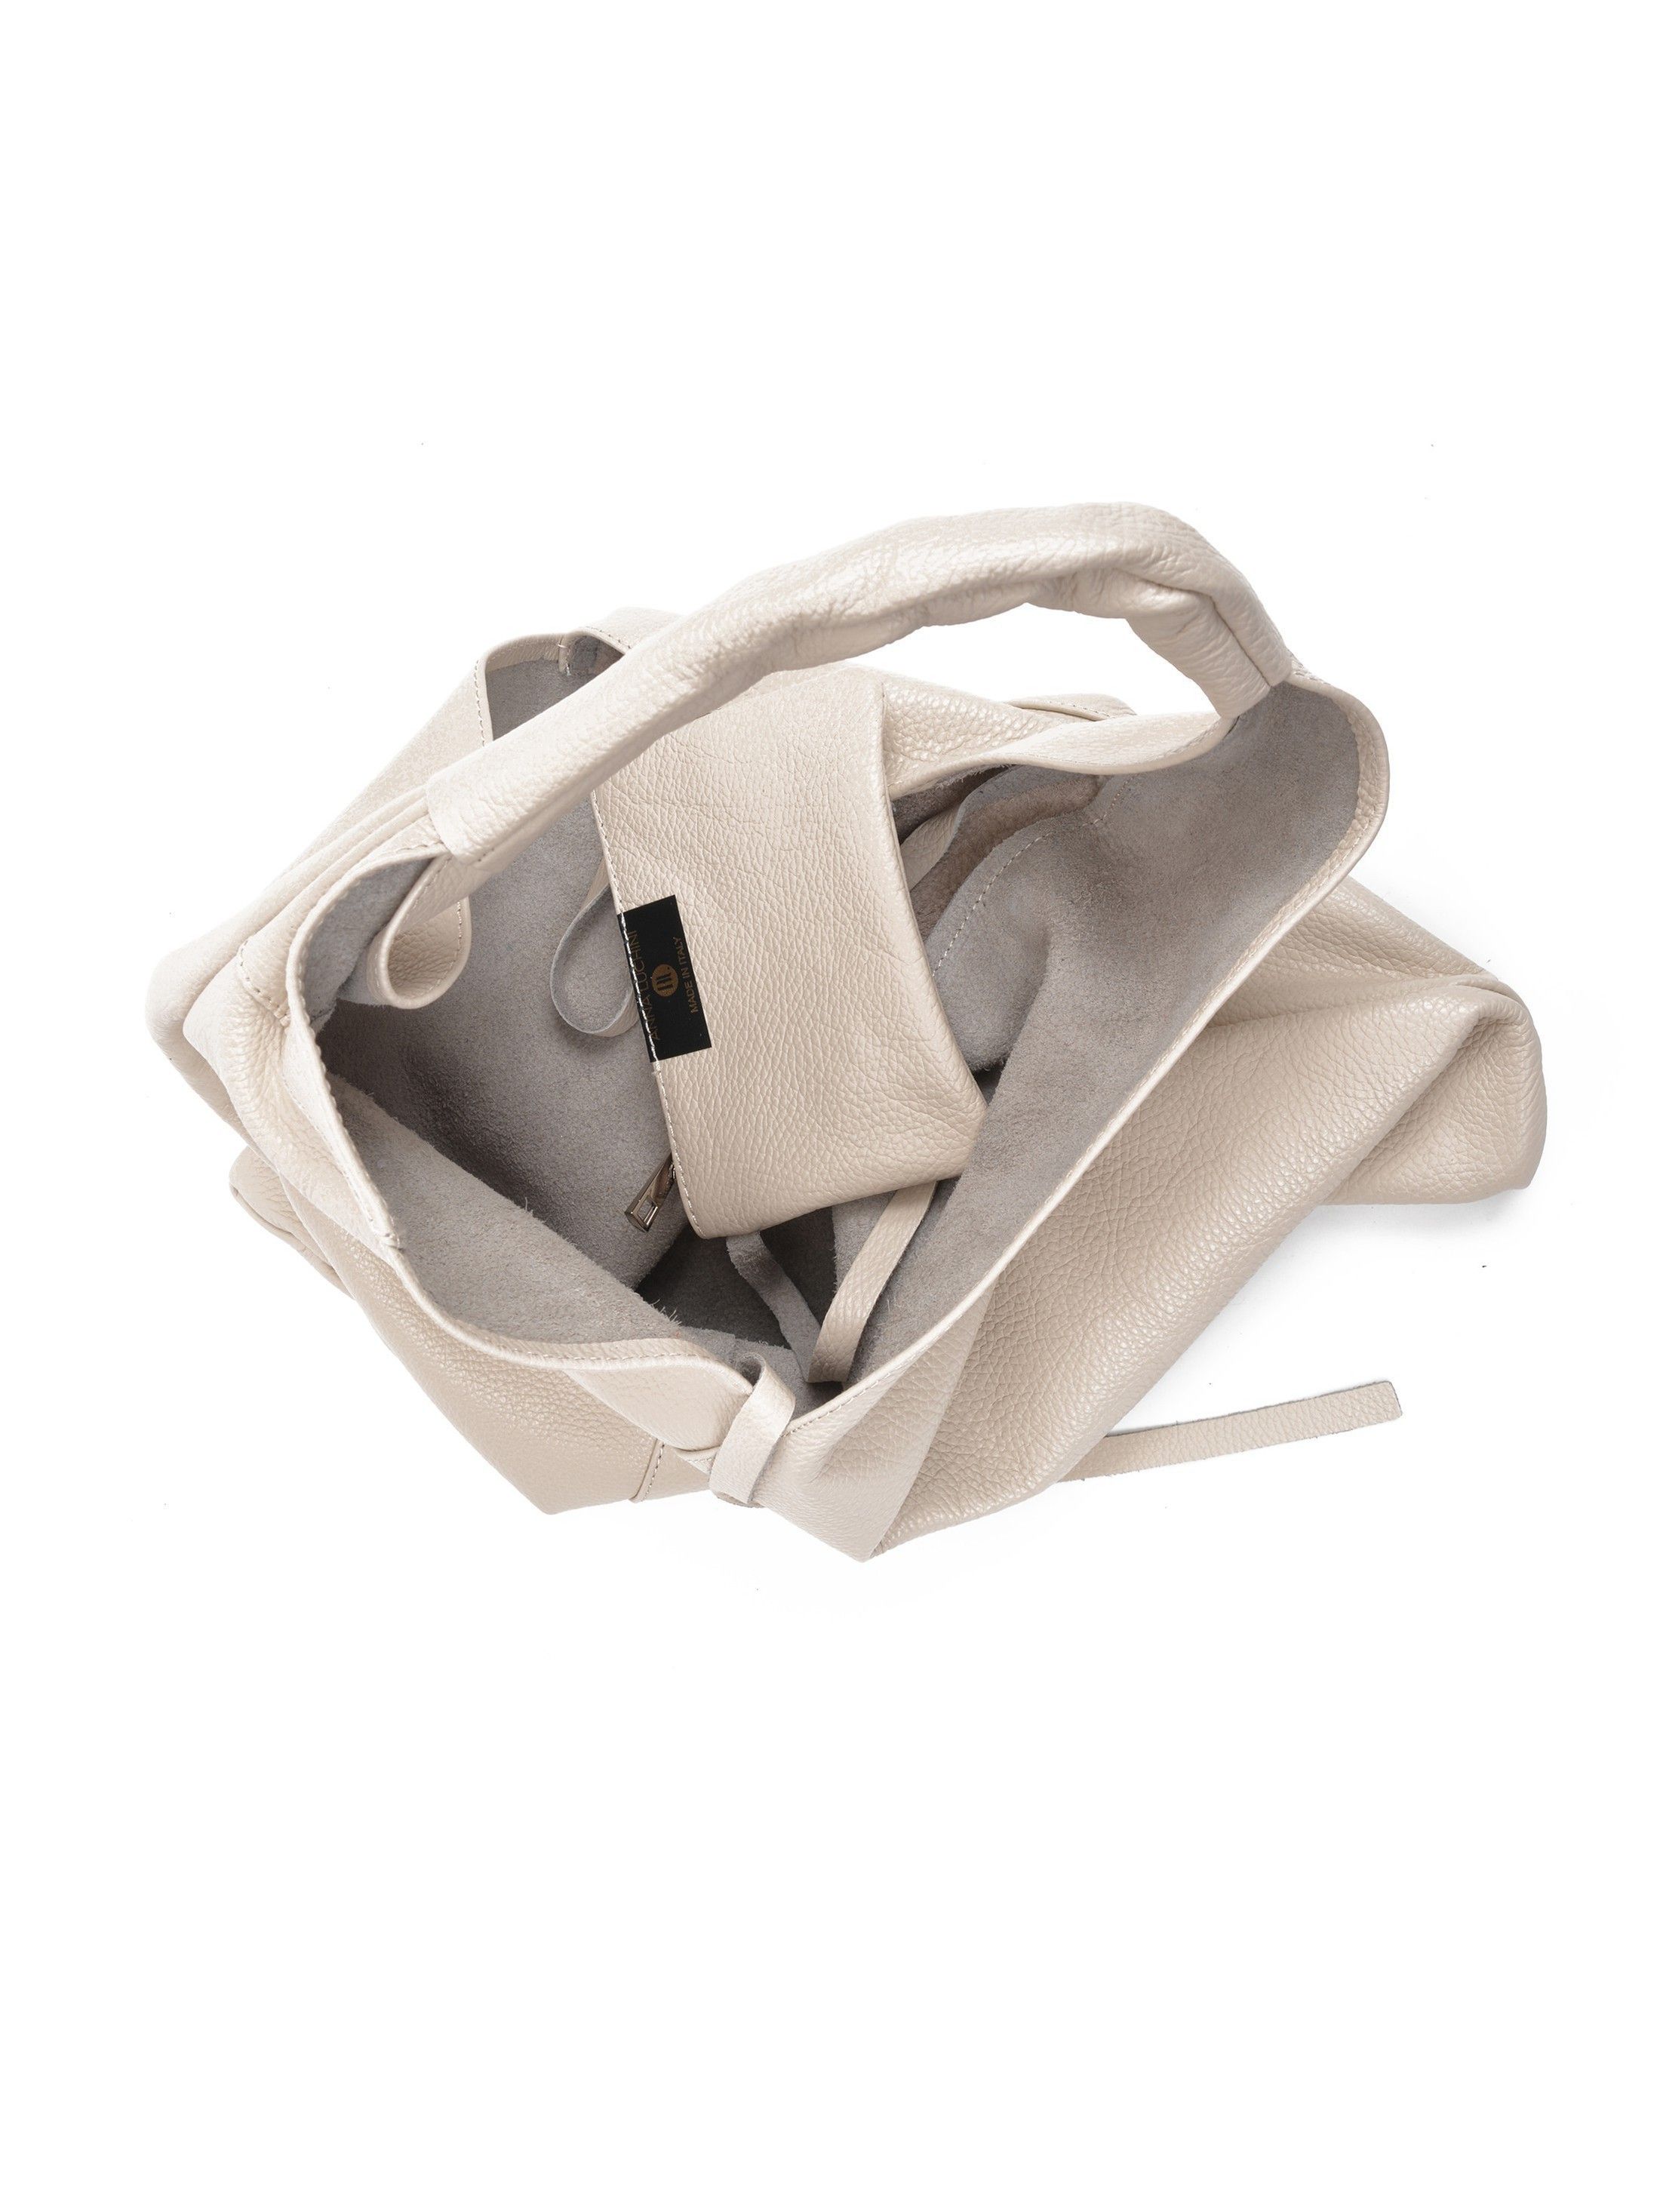 Shopper Bag
100% cow leather
Interior zip pocket
Top handles: 65 cm
Dimensions: 35x47x / cm             
Shoulder strap: /